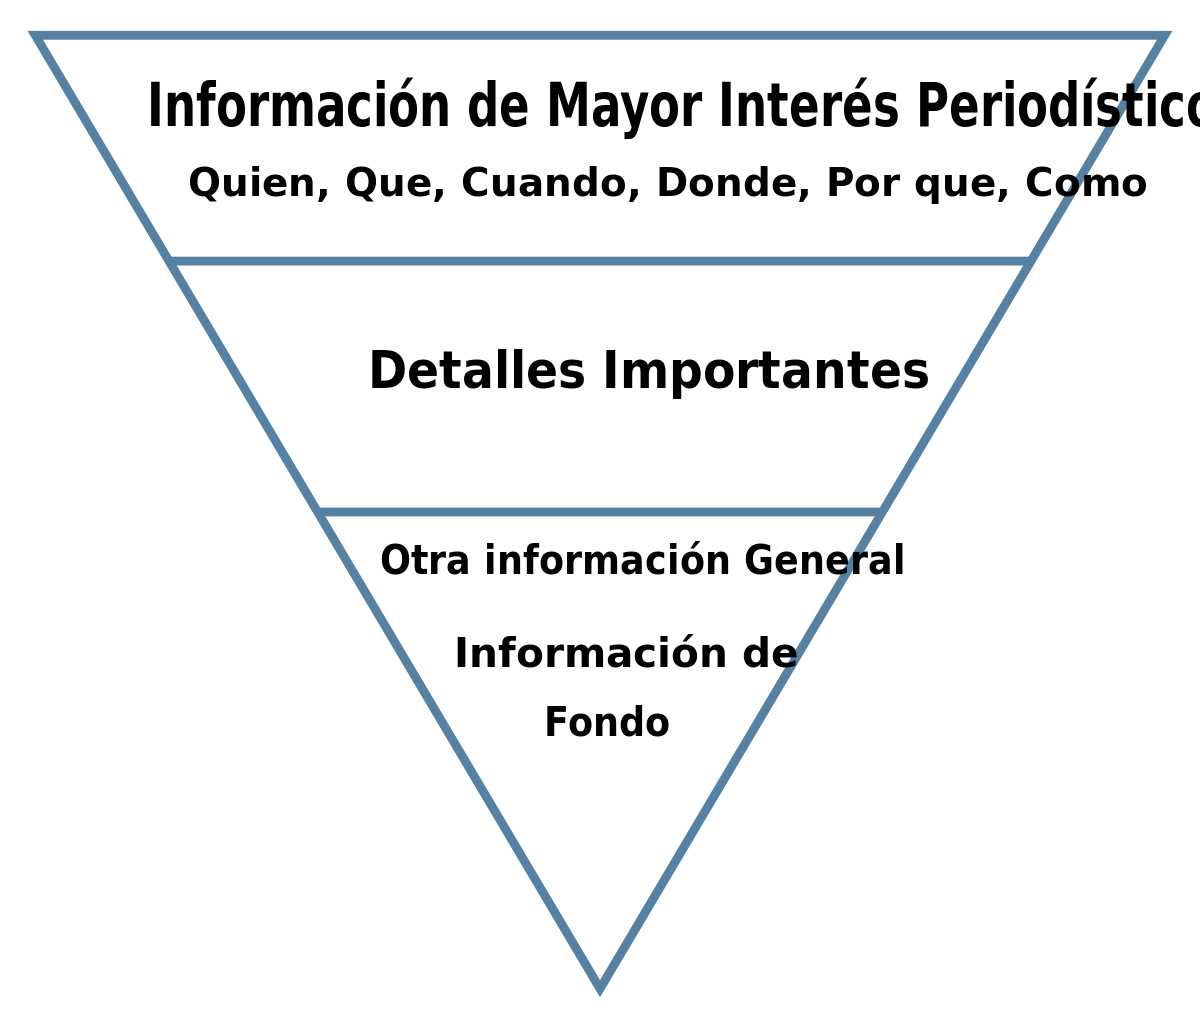 Pirámide invertida - Wikipedia, la enciclopedia libre